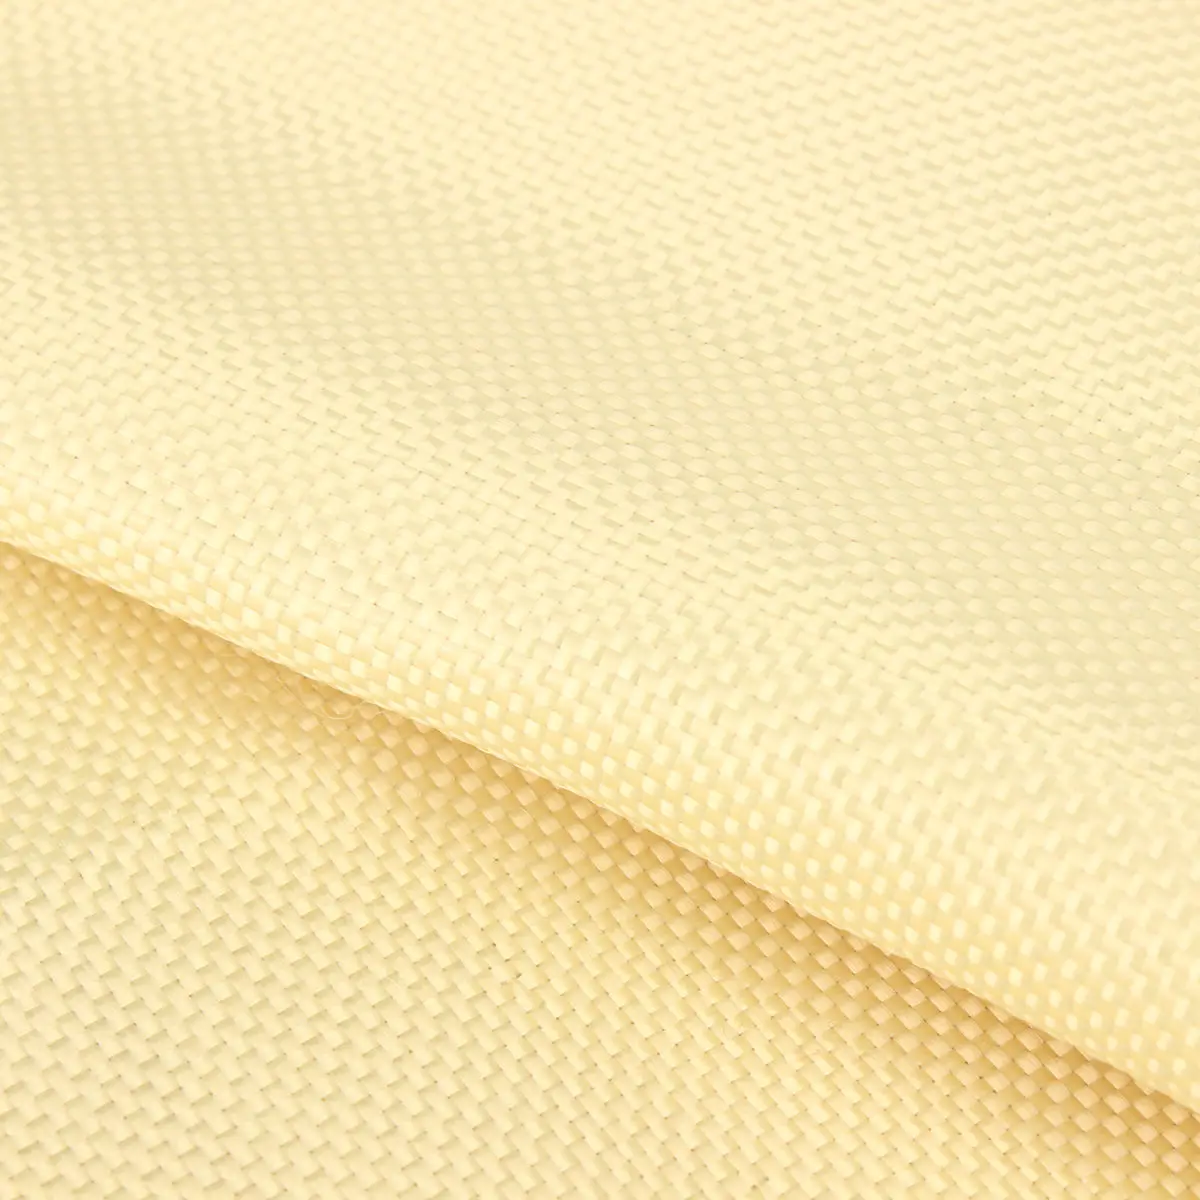 200gsm тканая кевларовая ткань, арамидная волокнистая ткань, однотонная желтая саржевая линейная плотность 1100 Dtex DIY ремесла 100*30 см Mayitr